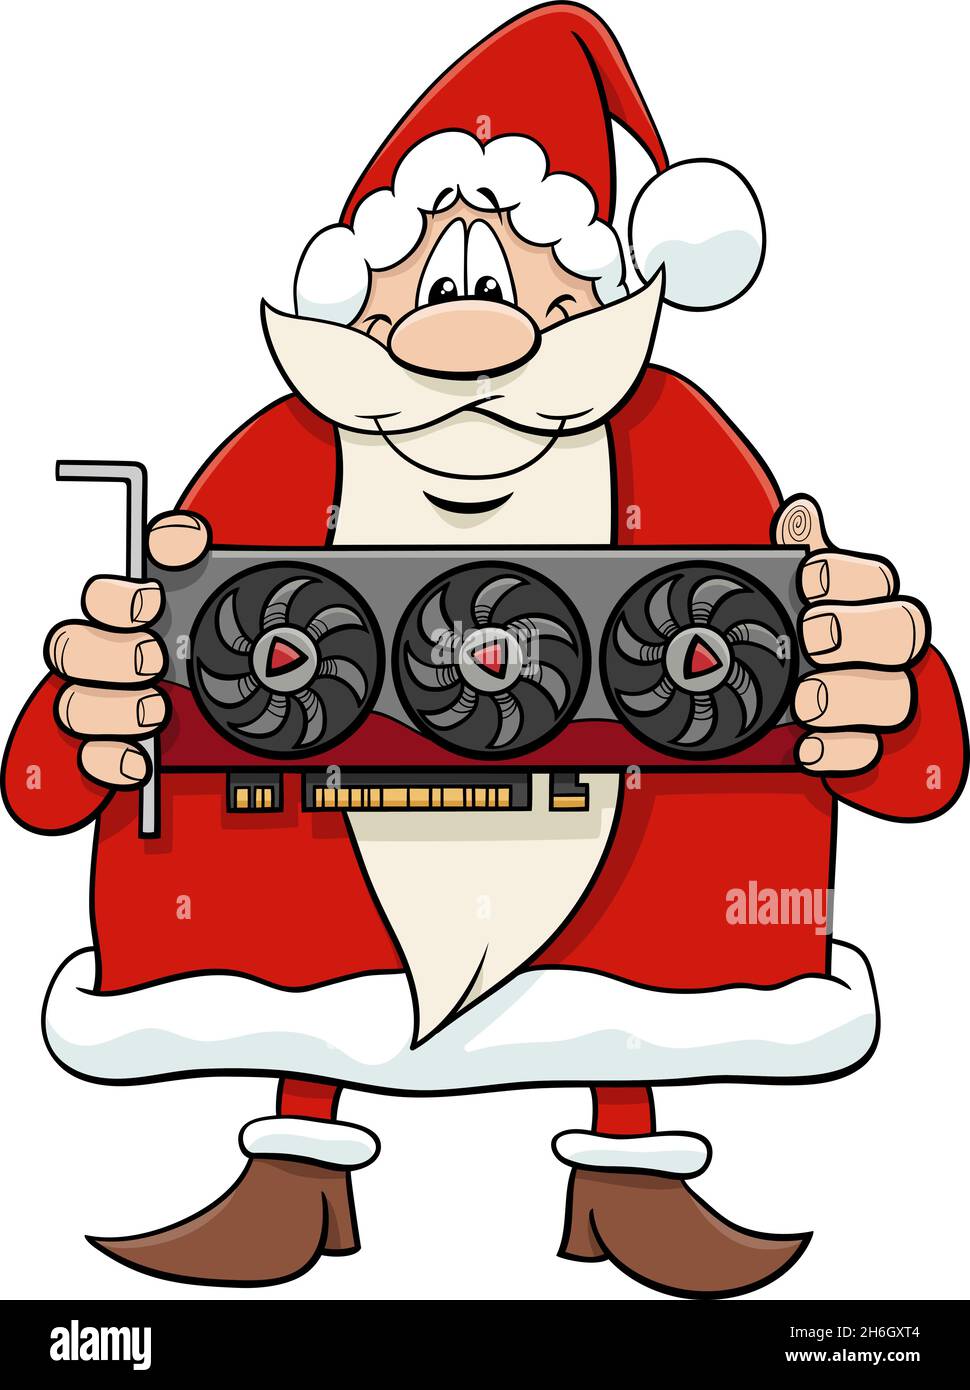 Cartoon-Illustration von glücklichen Weihnachtsmann Charakter mit Grafikkarte auf Weihnachtszeit Stock Vektor